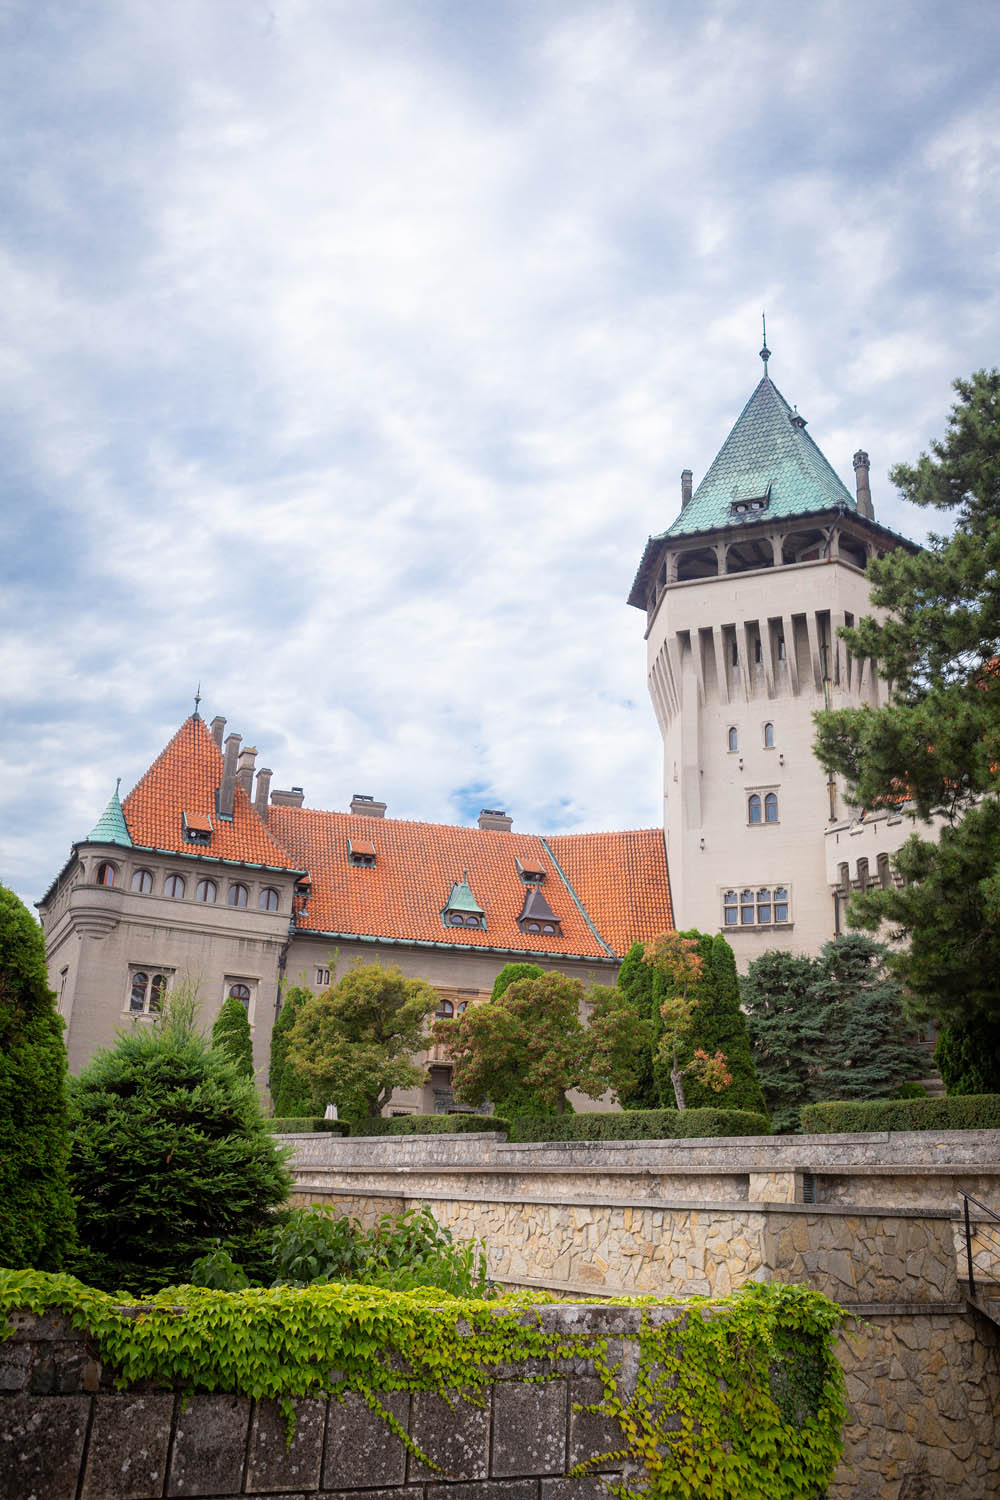 Het kasteel van Smolenice in Slowakije van voren gezien, met de toren en een zijvleugel.